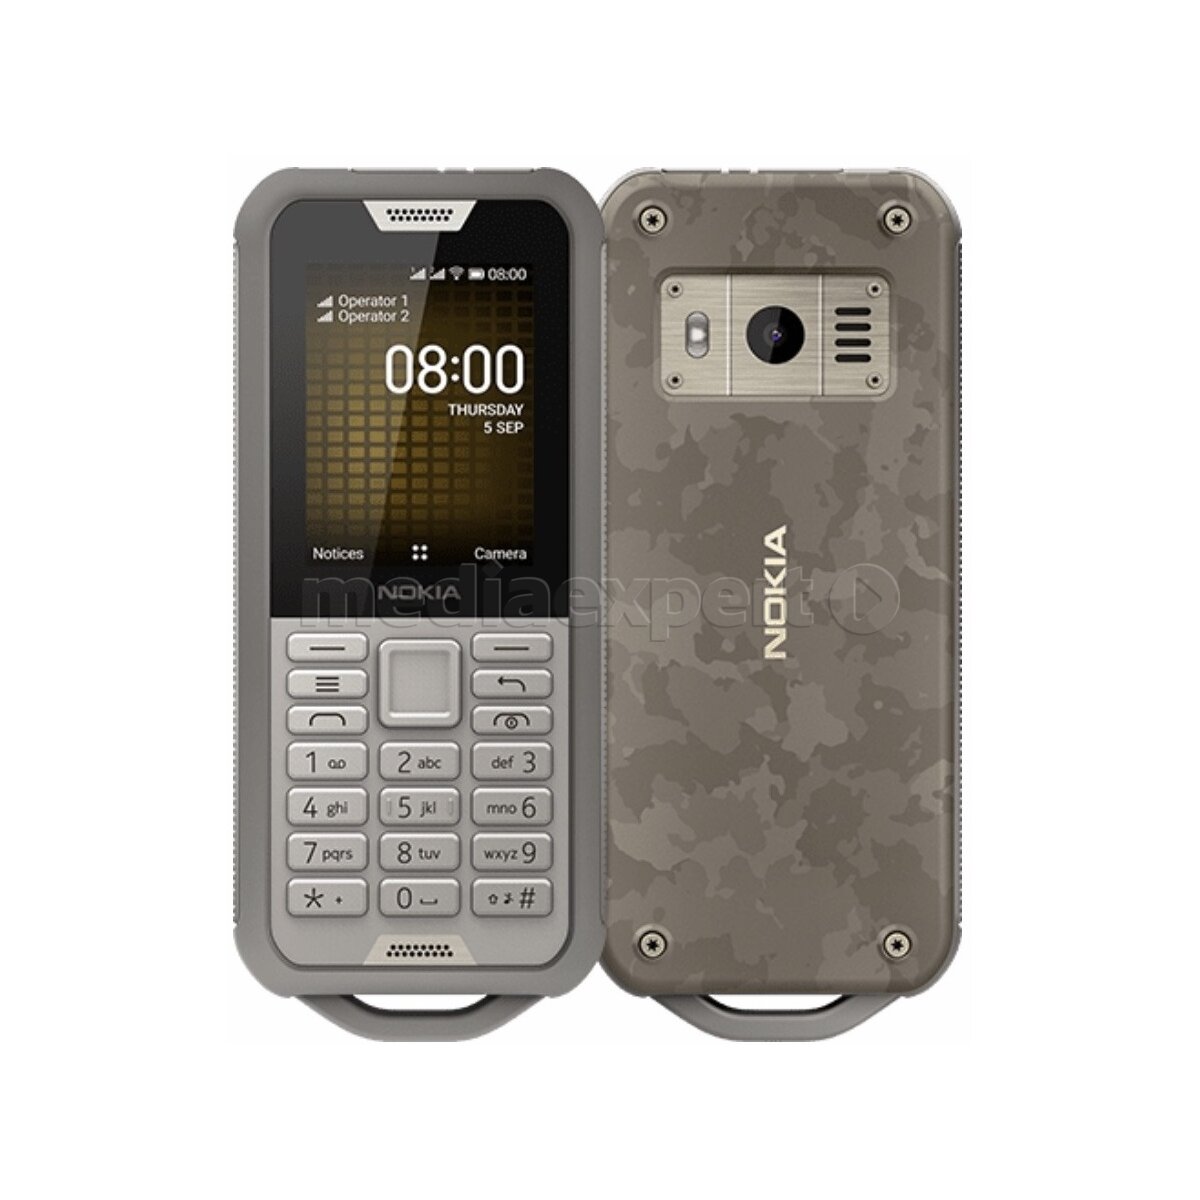 NOKIA 800 Tough Dual Sim Szary Telefon - ceny i opinie w ...